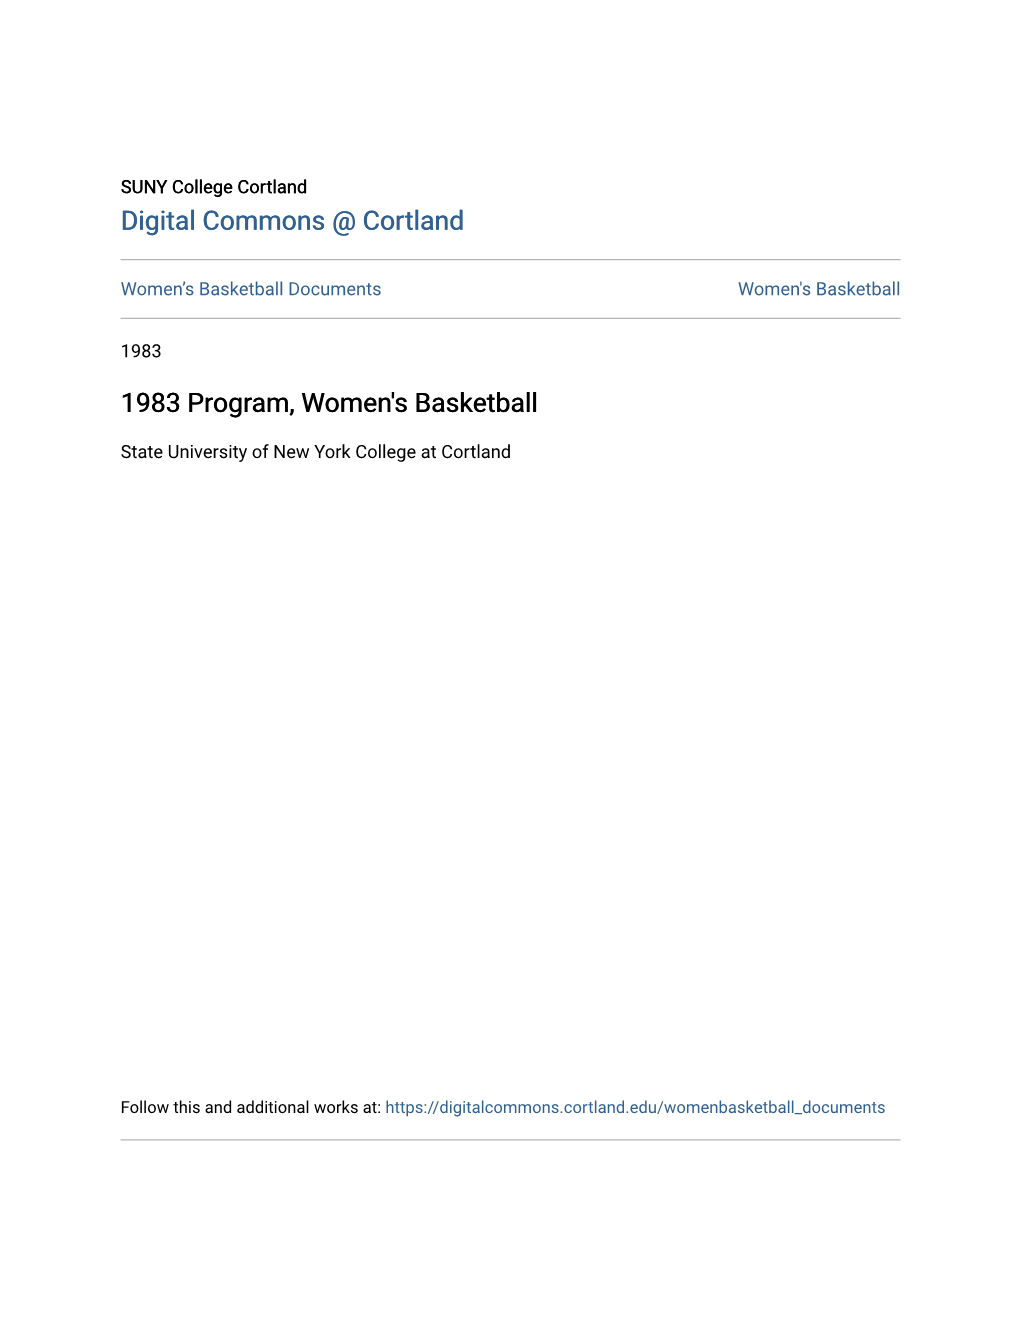 1983 Program, Women's Basketball